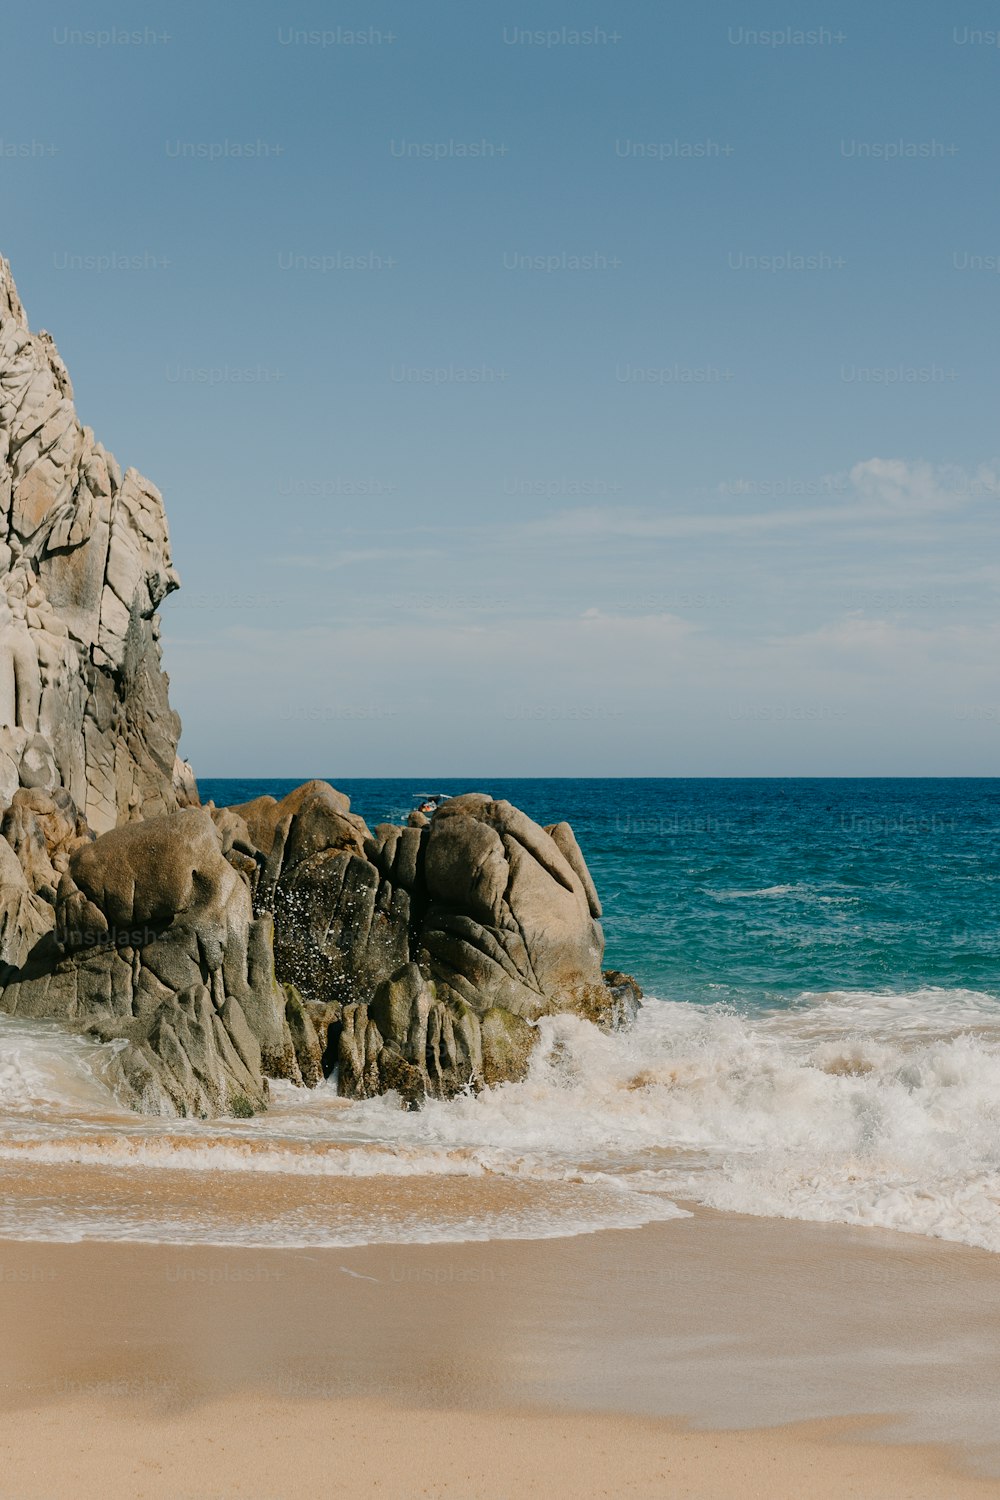 uma grande rocha saindo do oceano ao lado de uma praia